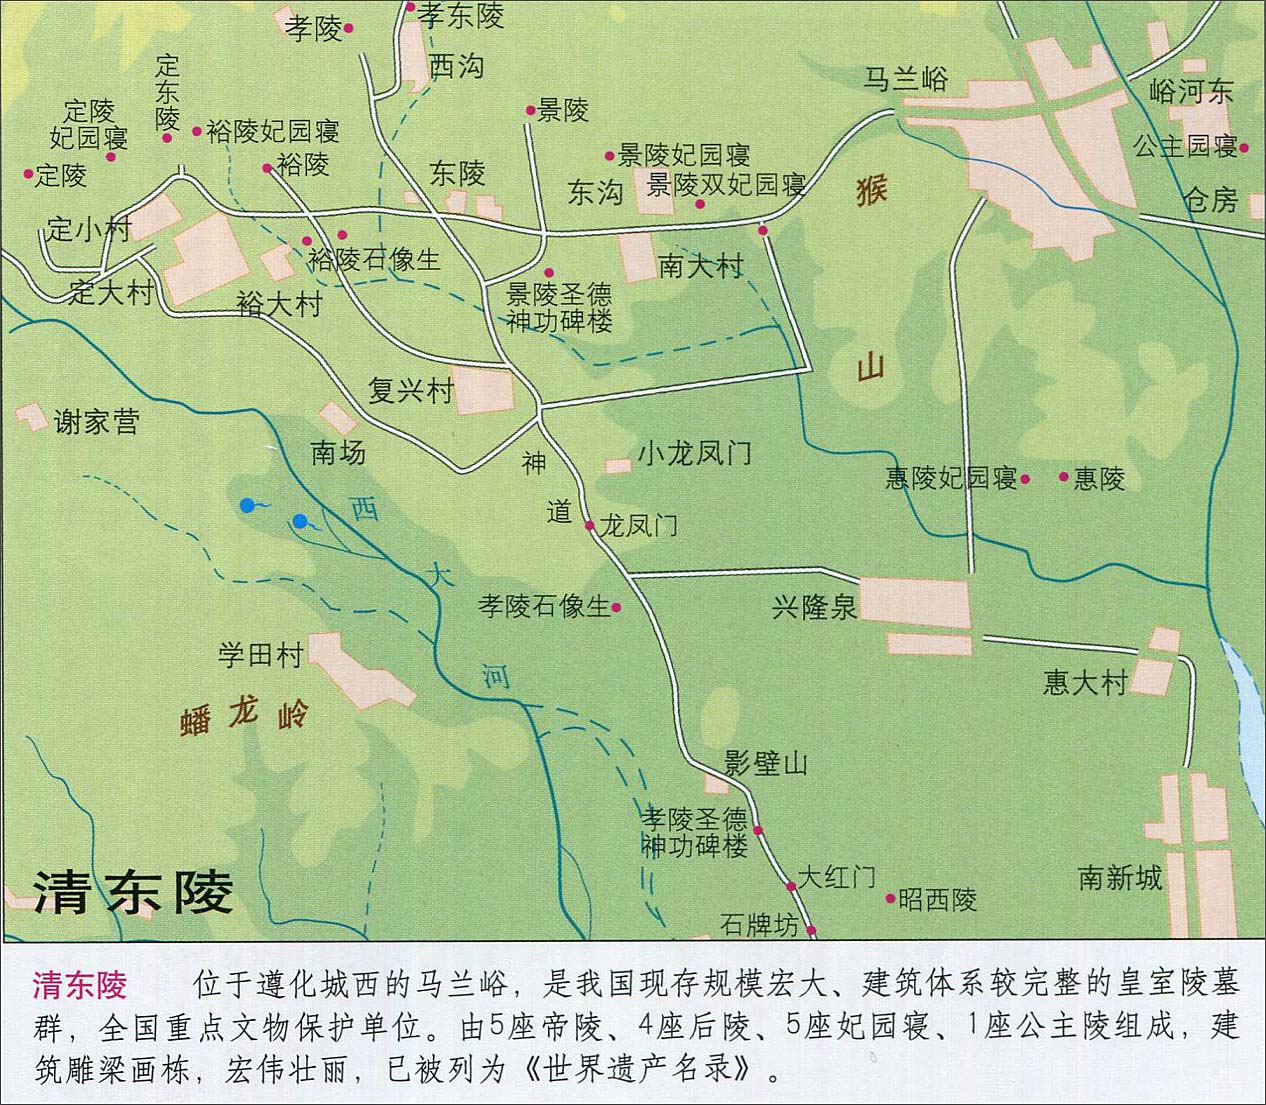 地图库 中国 河北 河北旅游 >> 清东陵旅游地图    世界各国 | 中国图片